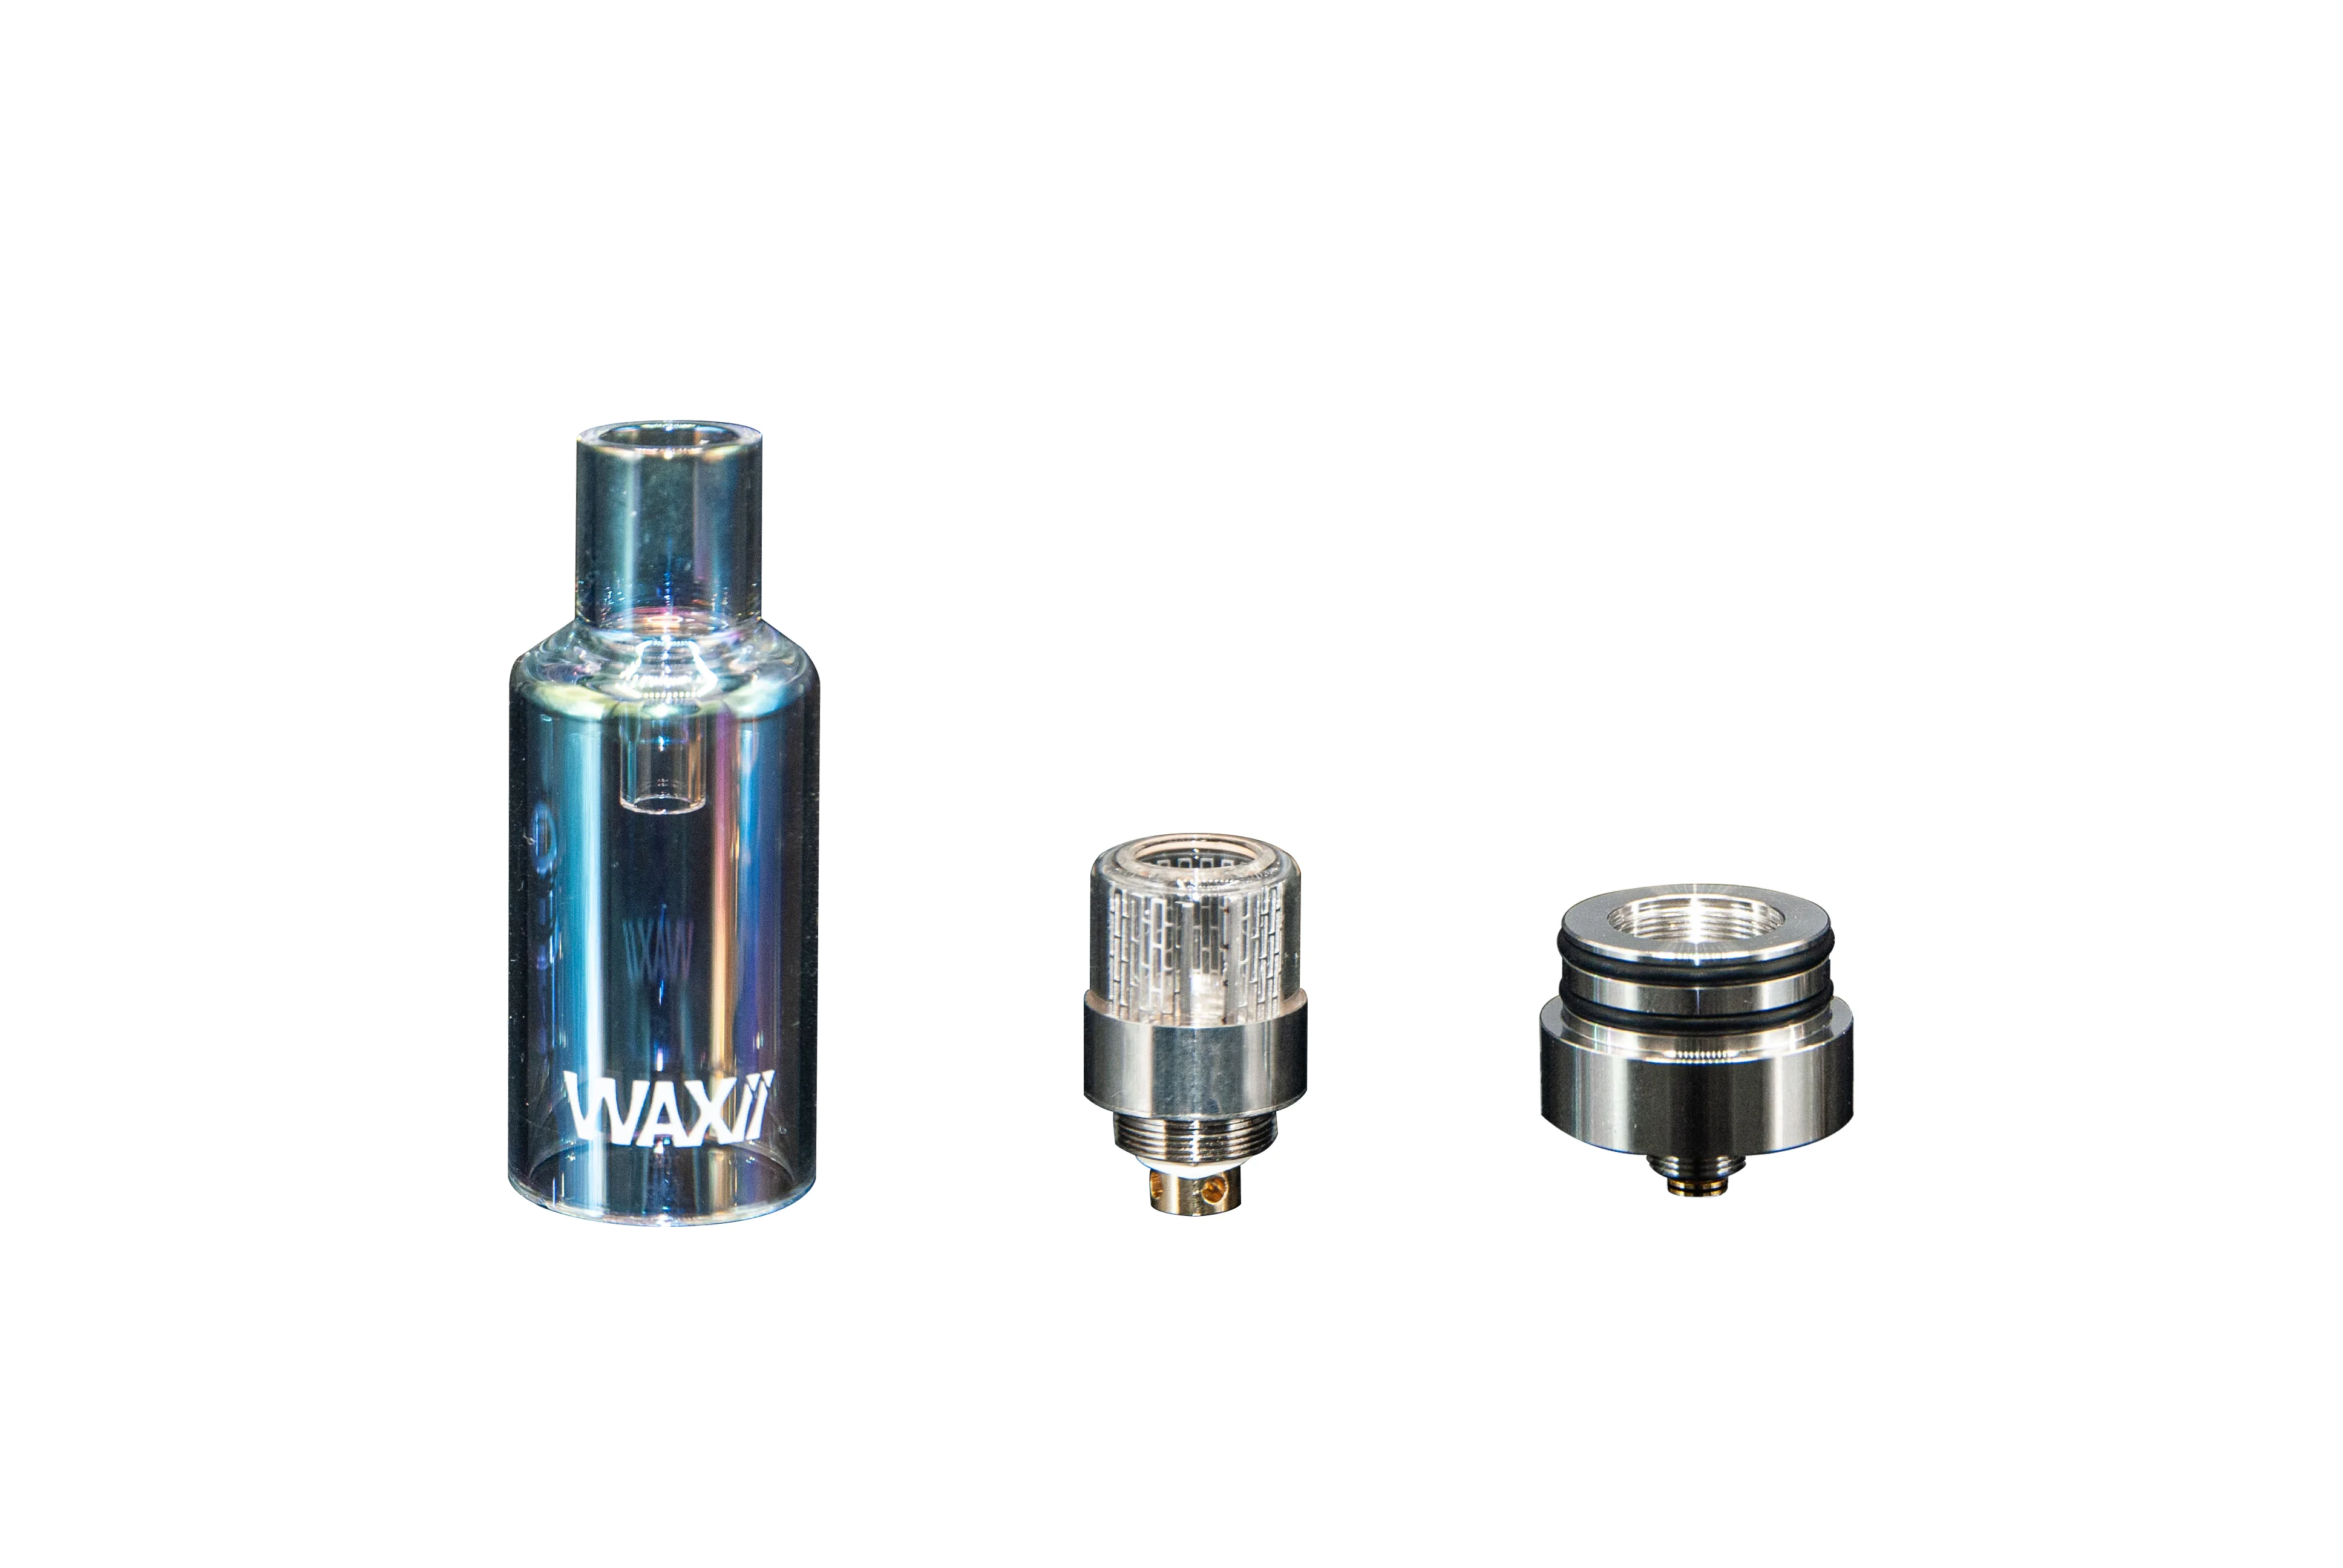 New arrival smoking vapor electric vaporizer device WAXii dab pen wax vaporizer